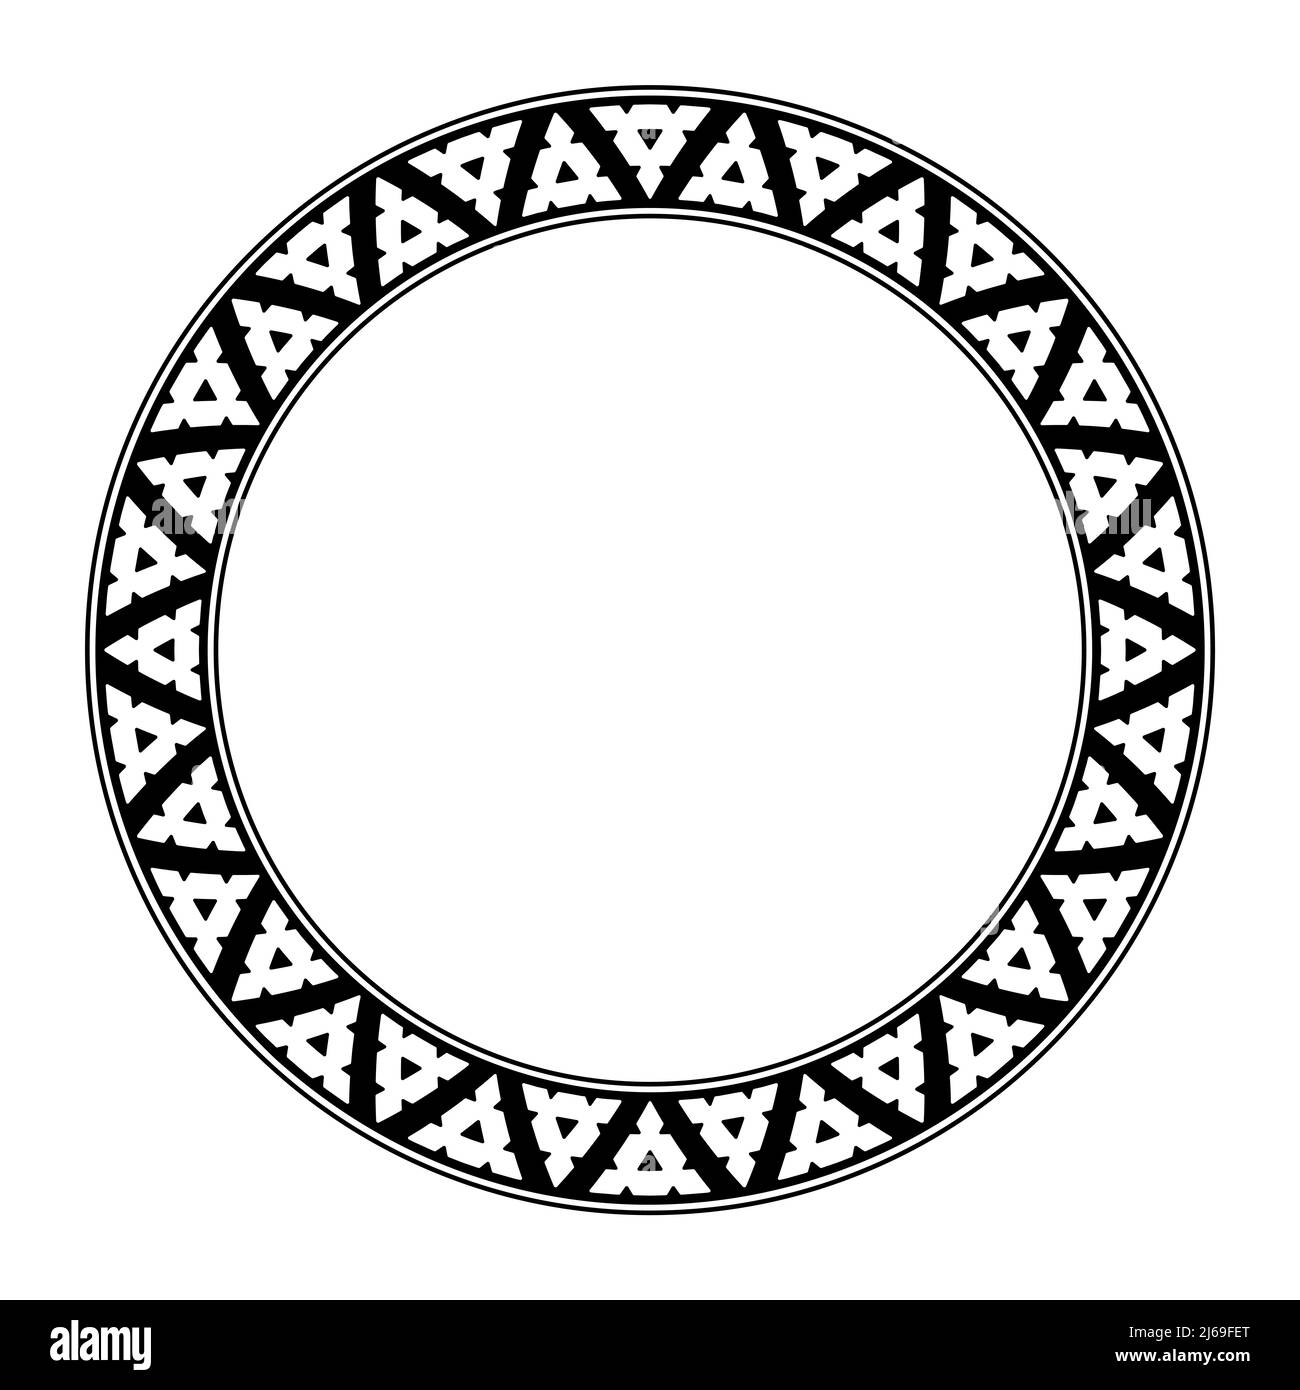 Geriffeltes Dreieck-Muster, Kreisrahmen basierend auf traditionellen melanesischen Intarsien-Mustern. Weiße Dreiecke, abwechselnd angeordnet, mit ausgeschnittenen Flächen. Stockfoto